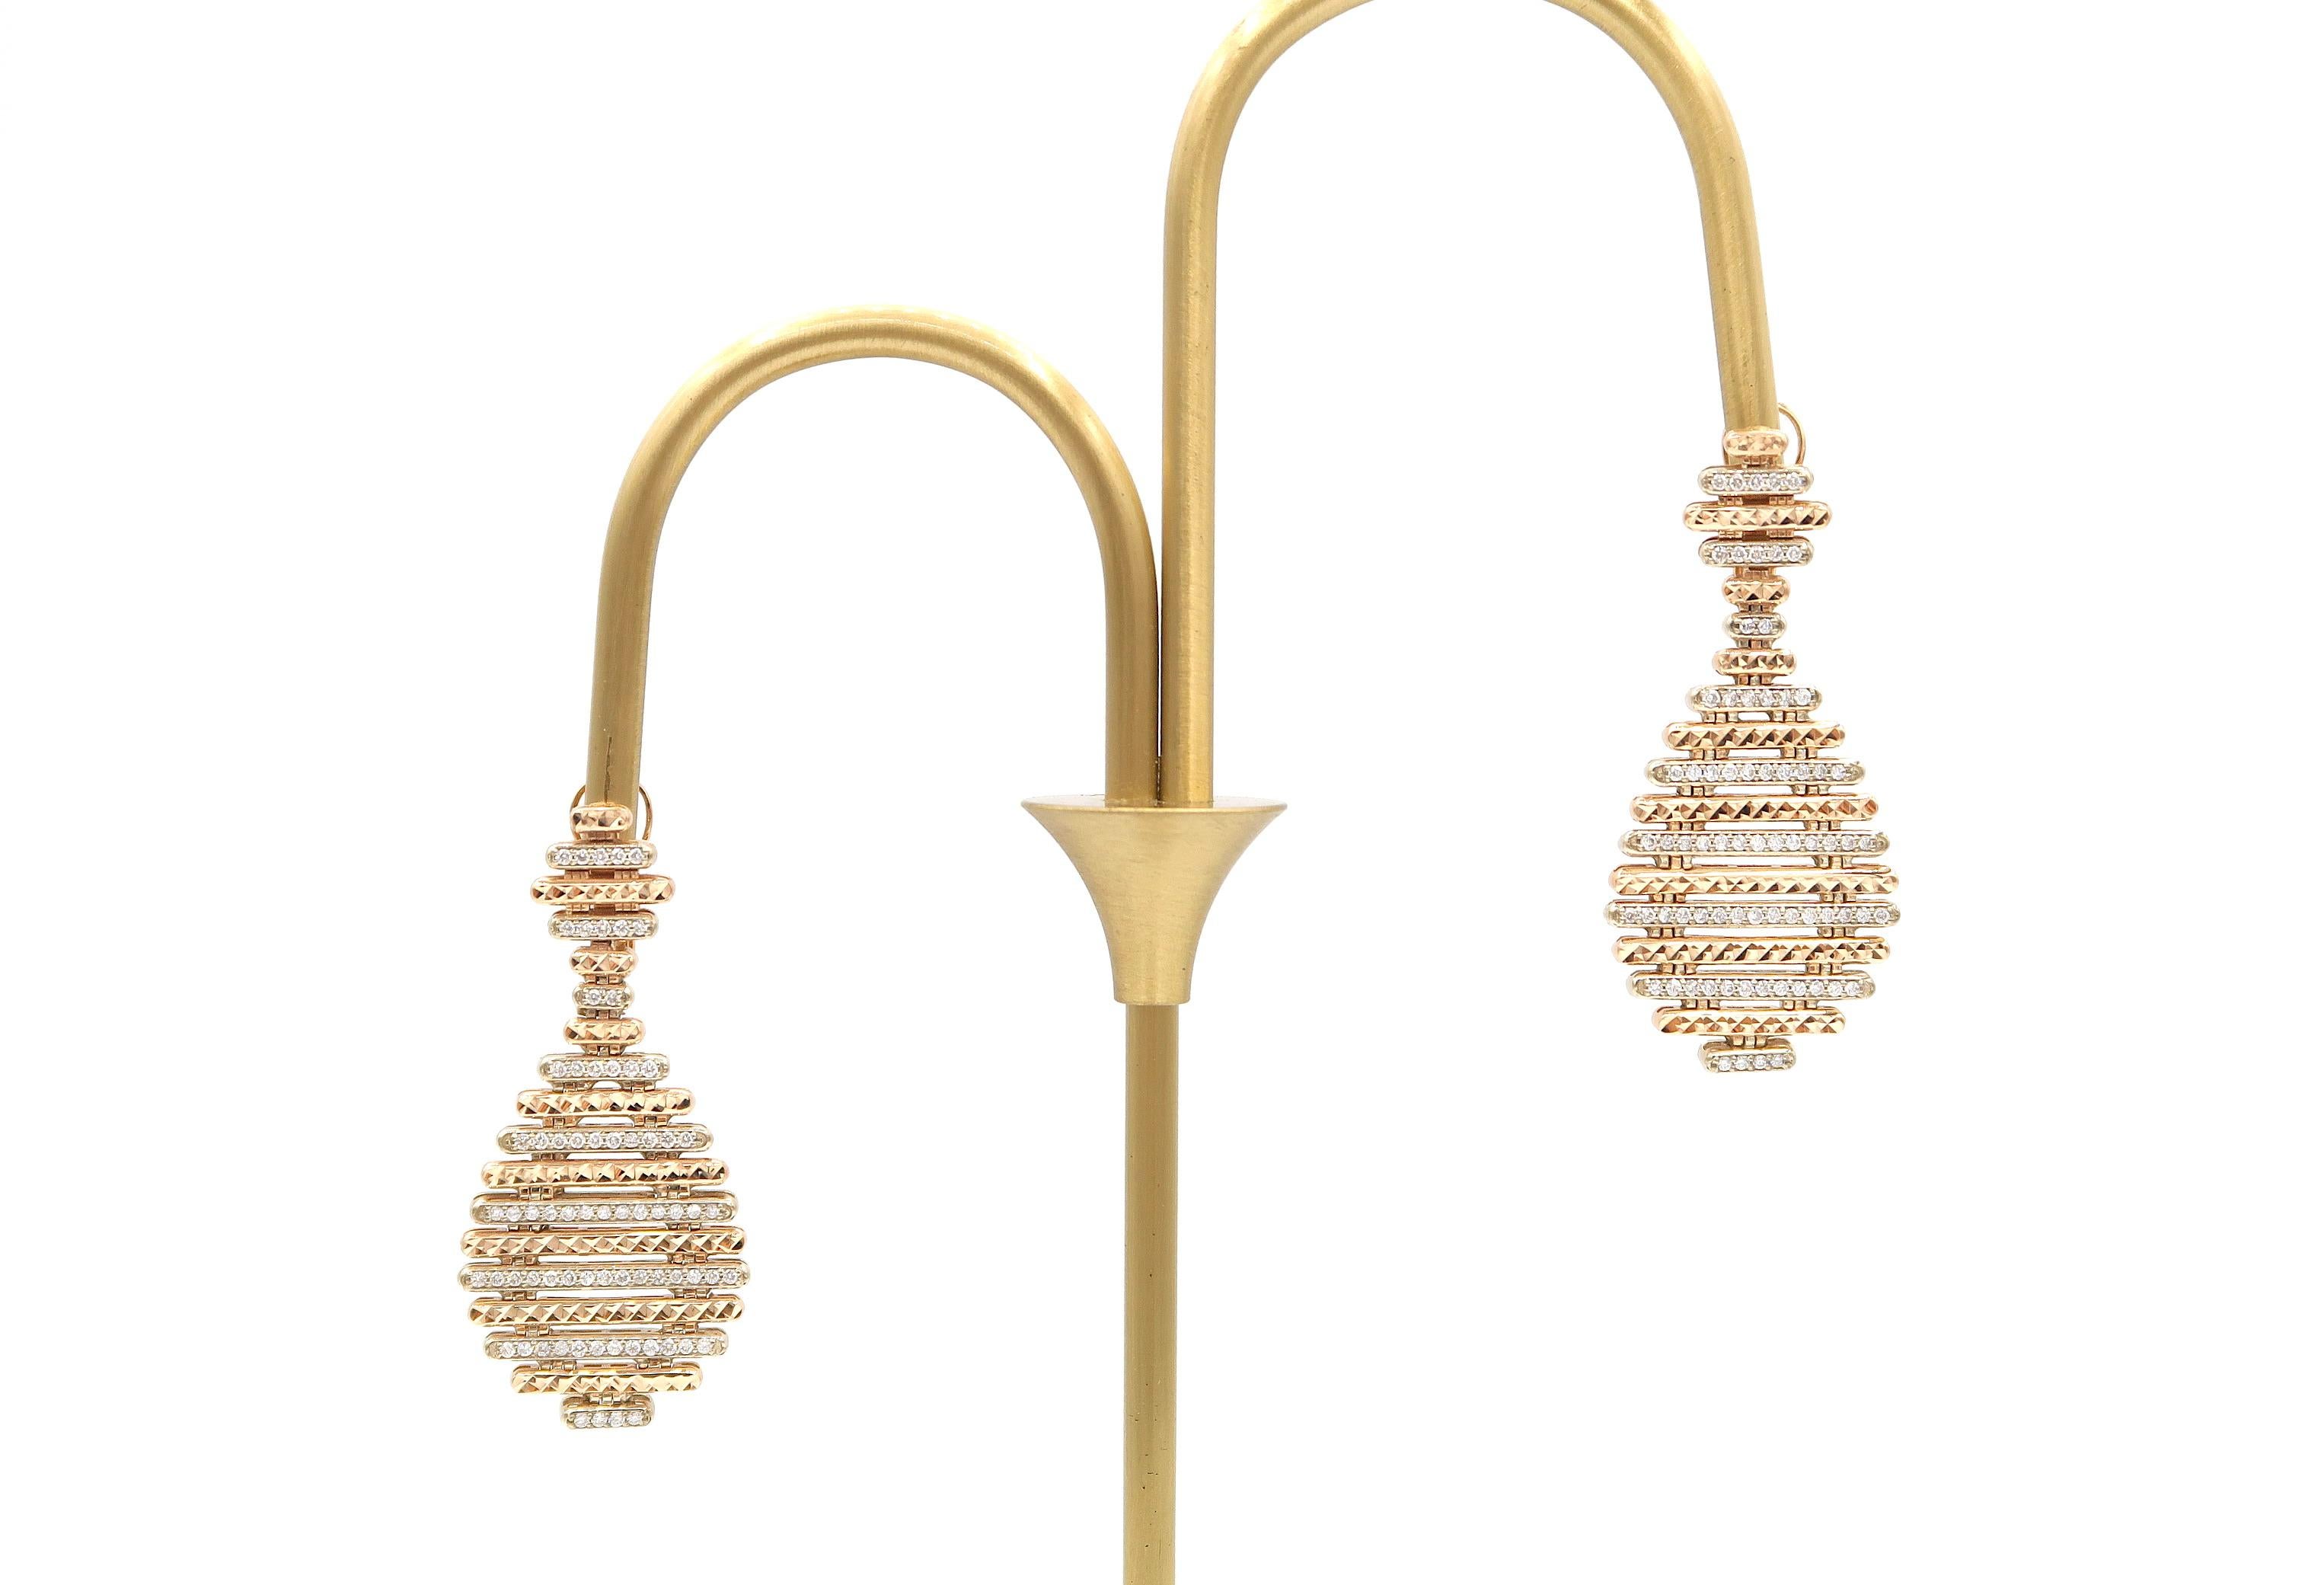 BOON Multiple Horizontal Rods Diamond Pavé Chandelier Earrings in 18 Karat Rose Gold and White Gold

Gold: 18K 16.88g.
Diamond: 0.98ct.